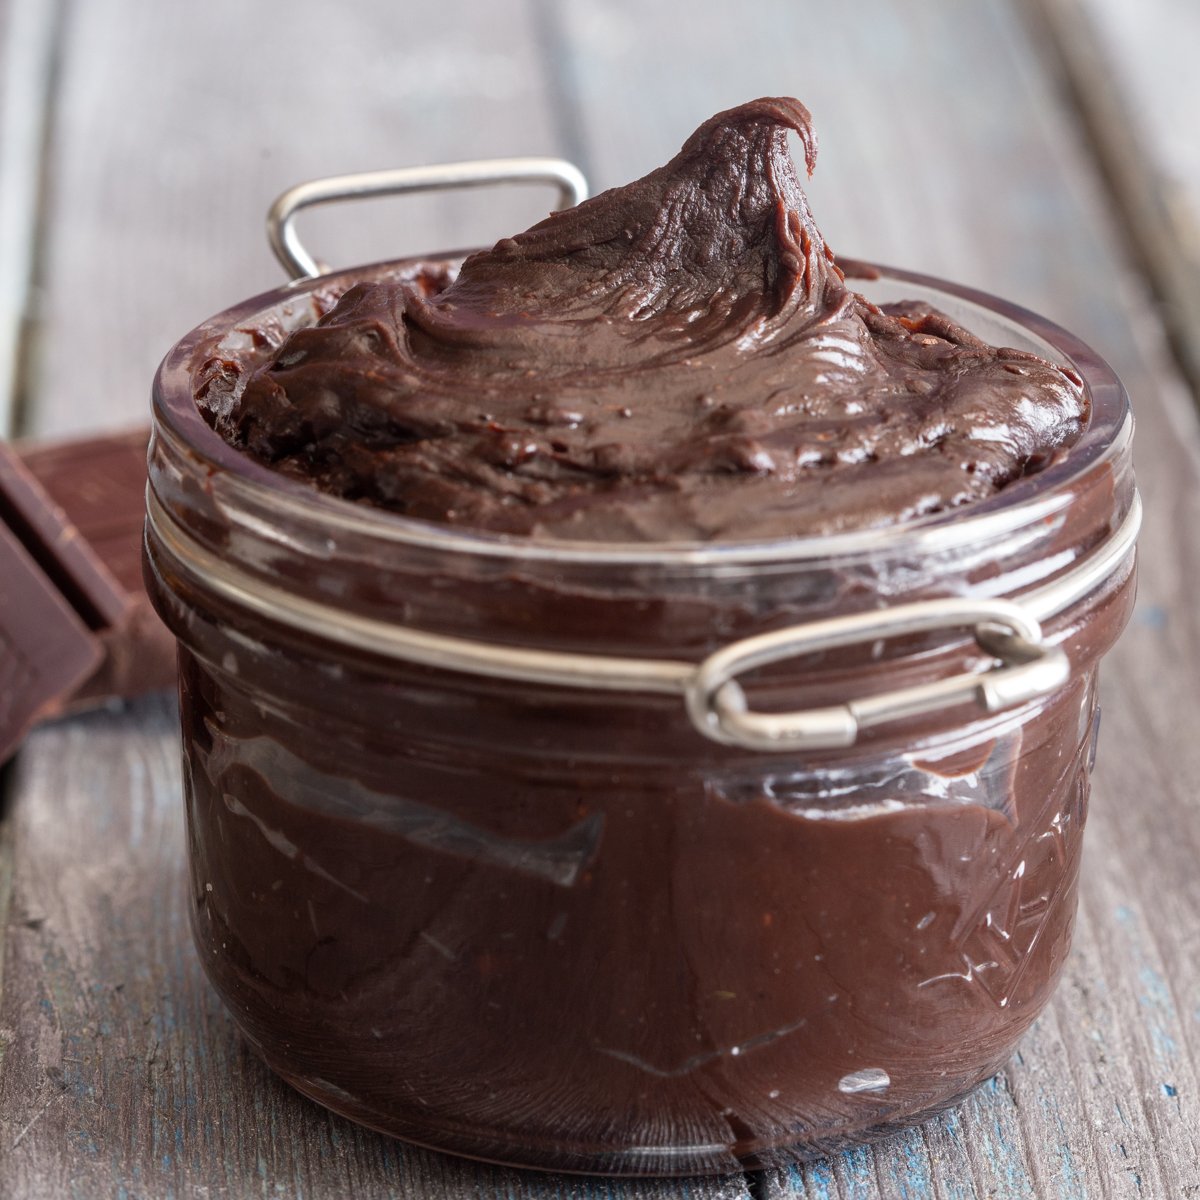 Chocolate cream in a jar.